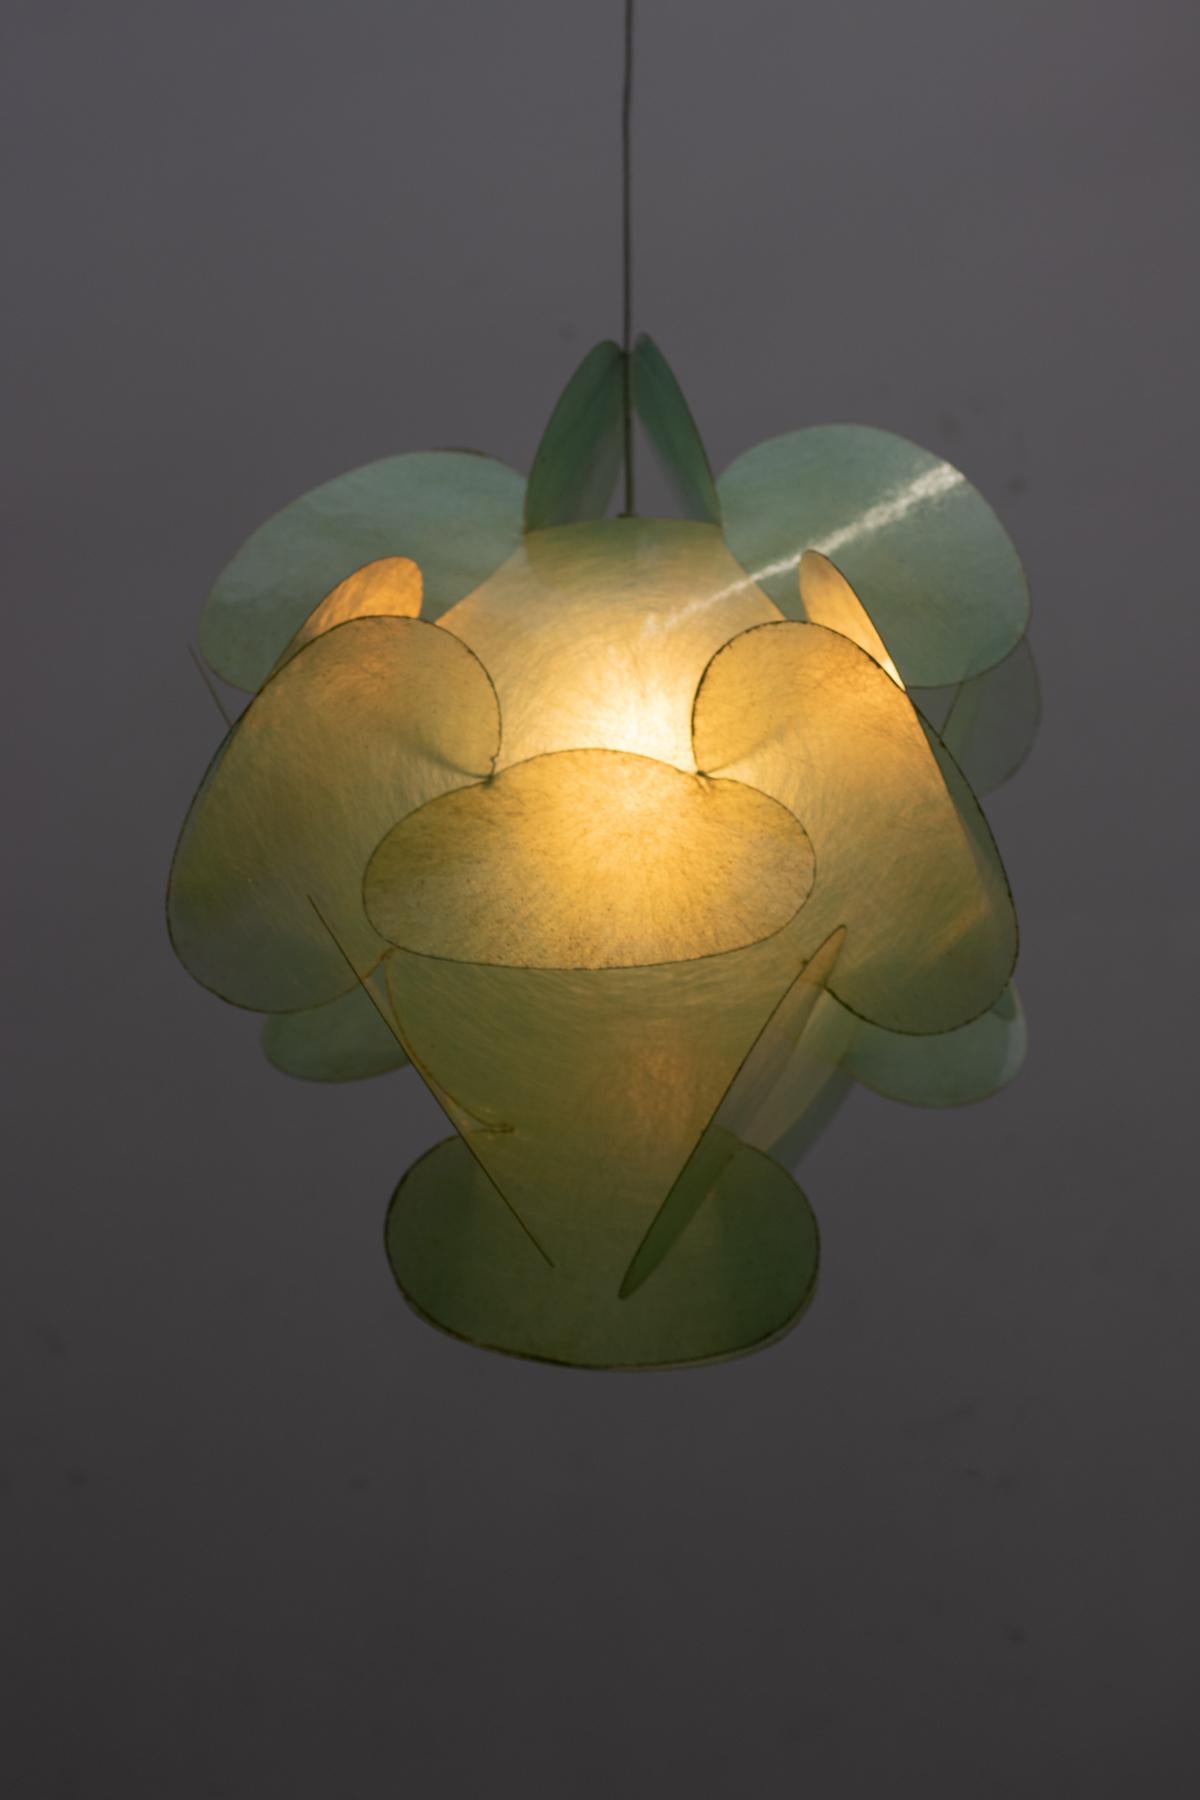 Organic Modern Fiberglass pendant by Enrico Botta for Sundown, Italy 1968